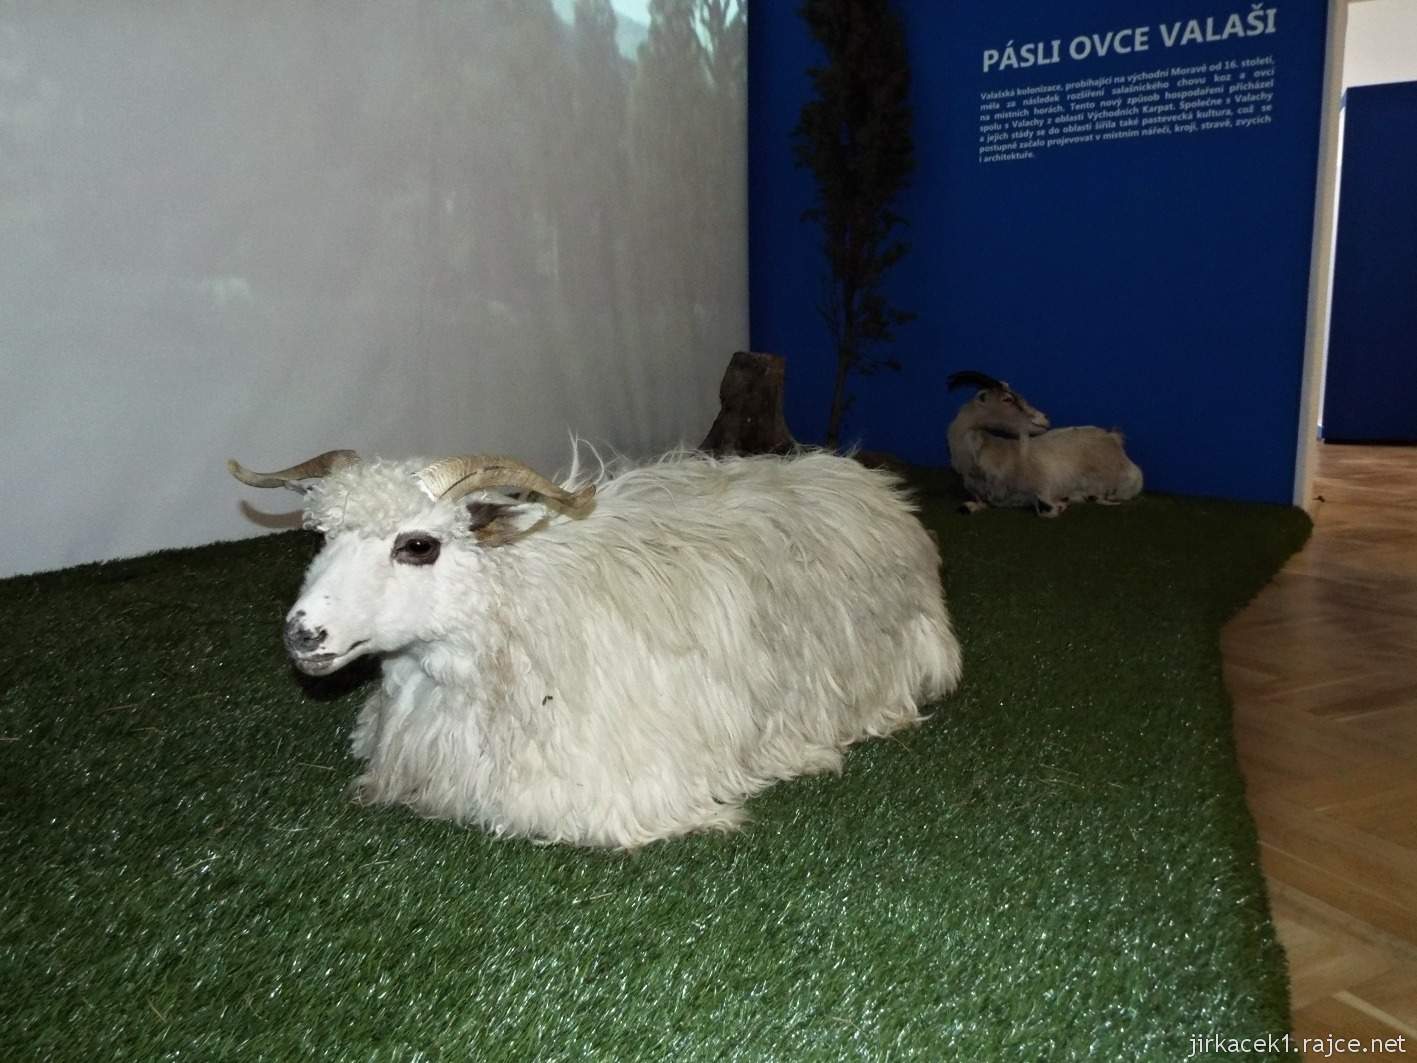 Vsetín - zámek a muzeum - etnografická expozice Pásli ovce Valaši